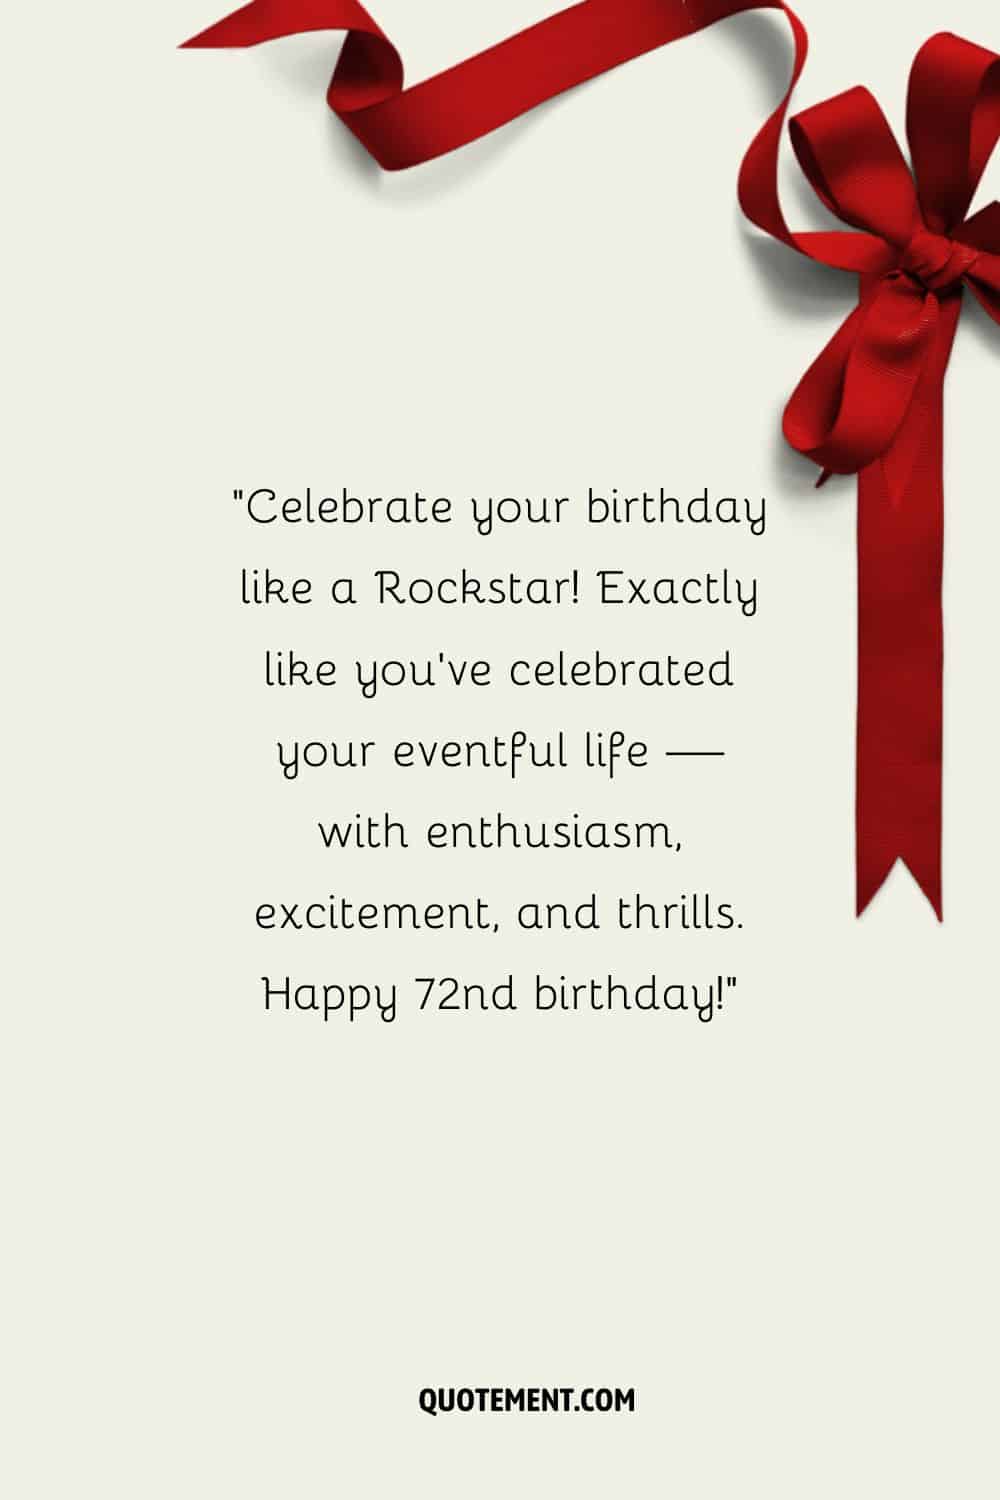 un lazo rojo de regalo que representa el más hermoso deseo de feliz 72 cumpleaños